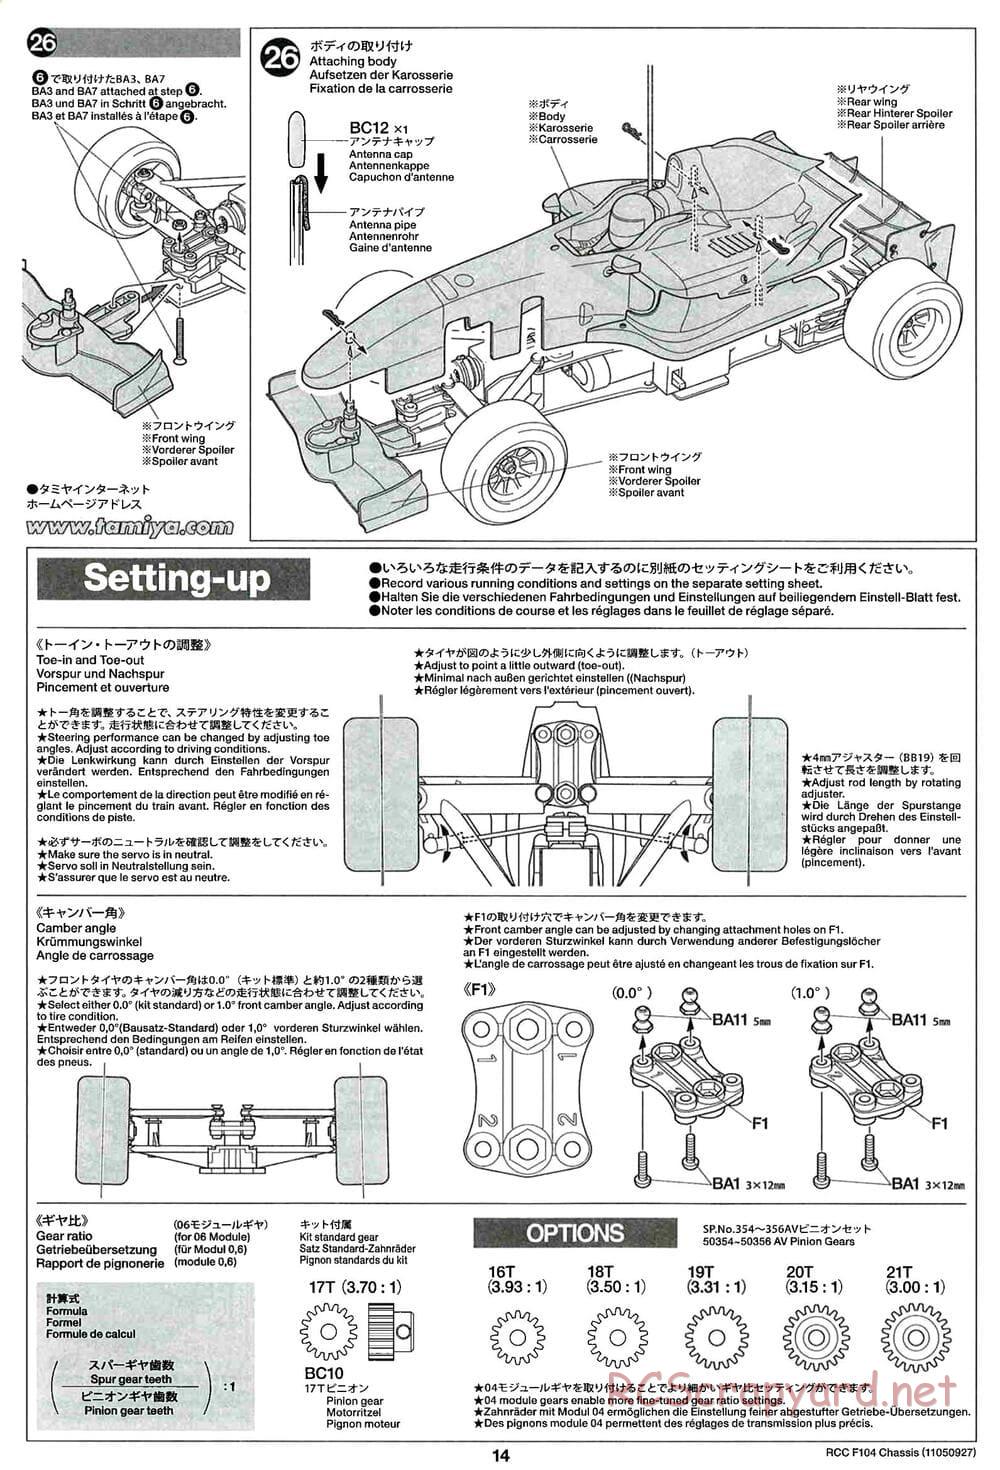 Tamiya - F104 Chassis - Manual - Page 14